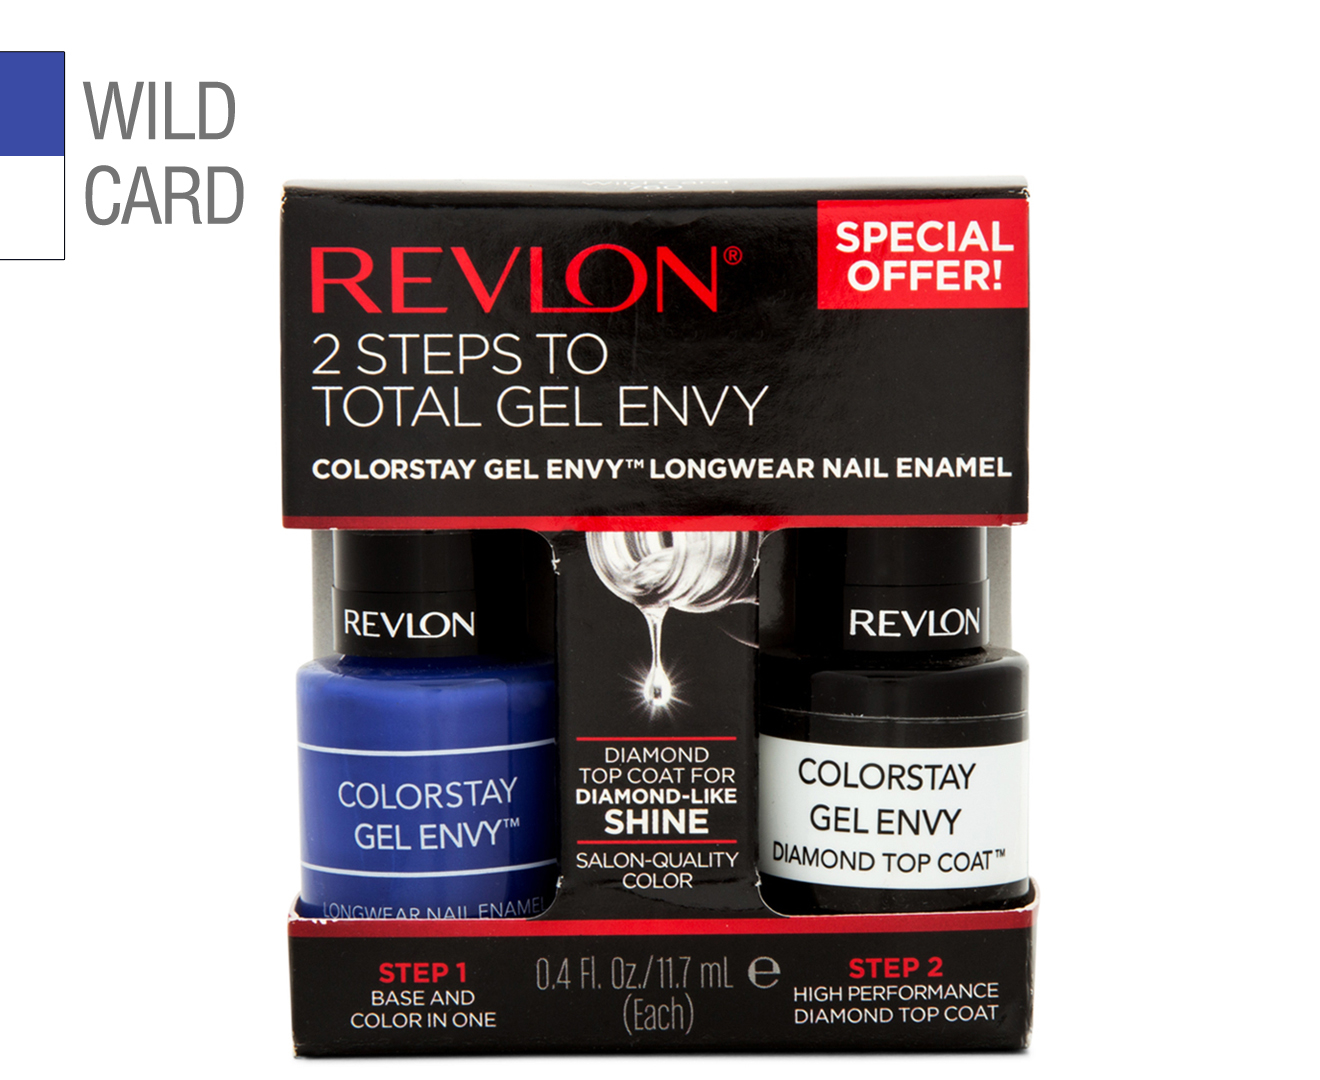 6. Revlon ColorStay Gel Envy in "Wild Card" - wide 5